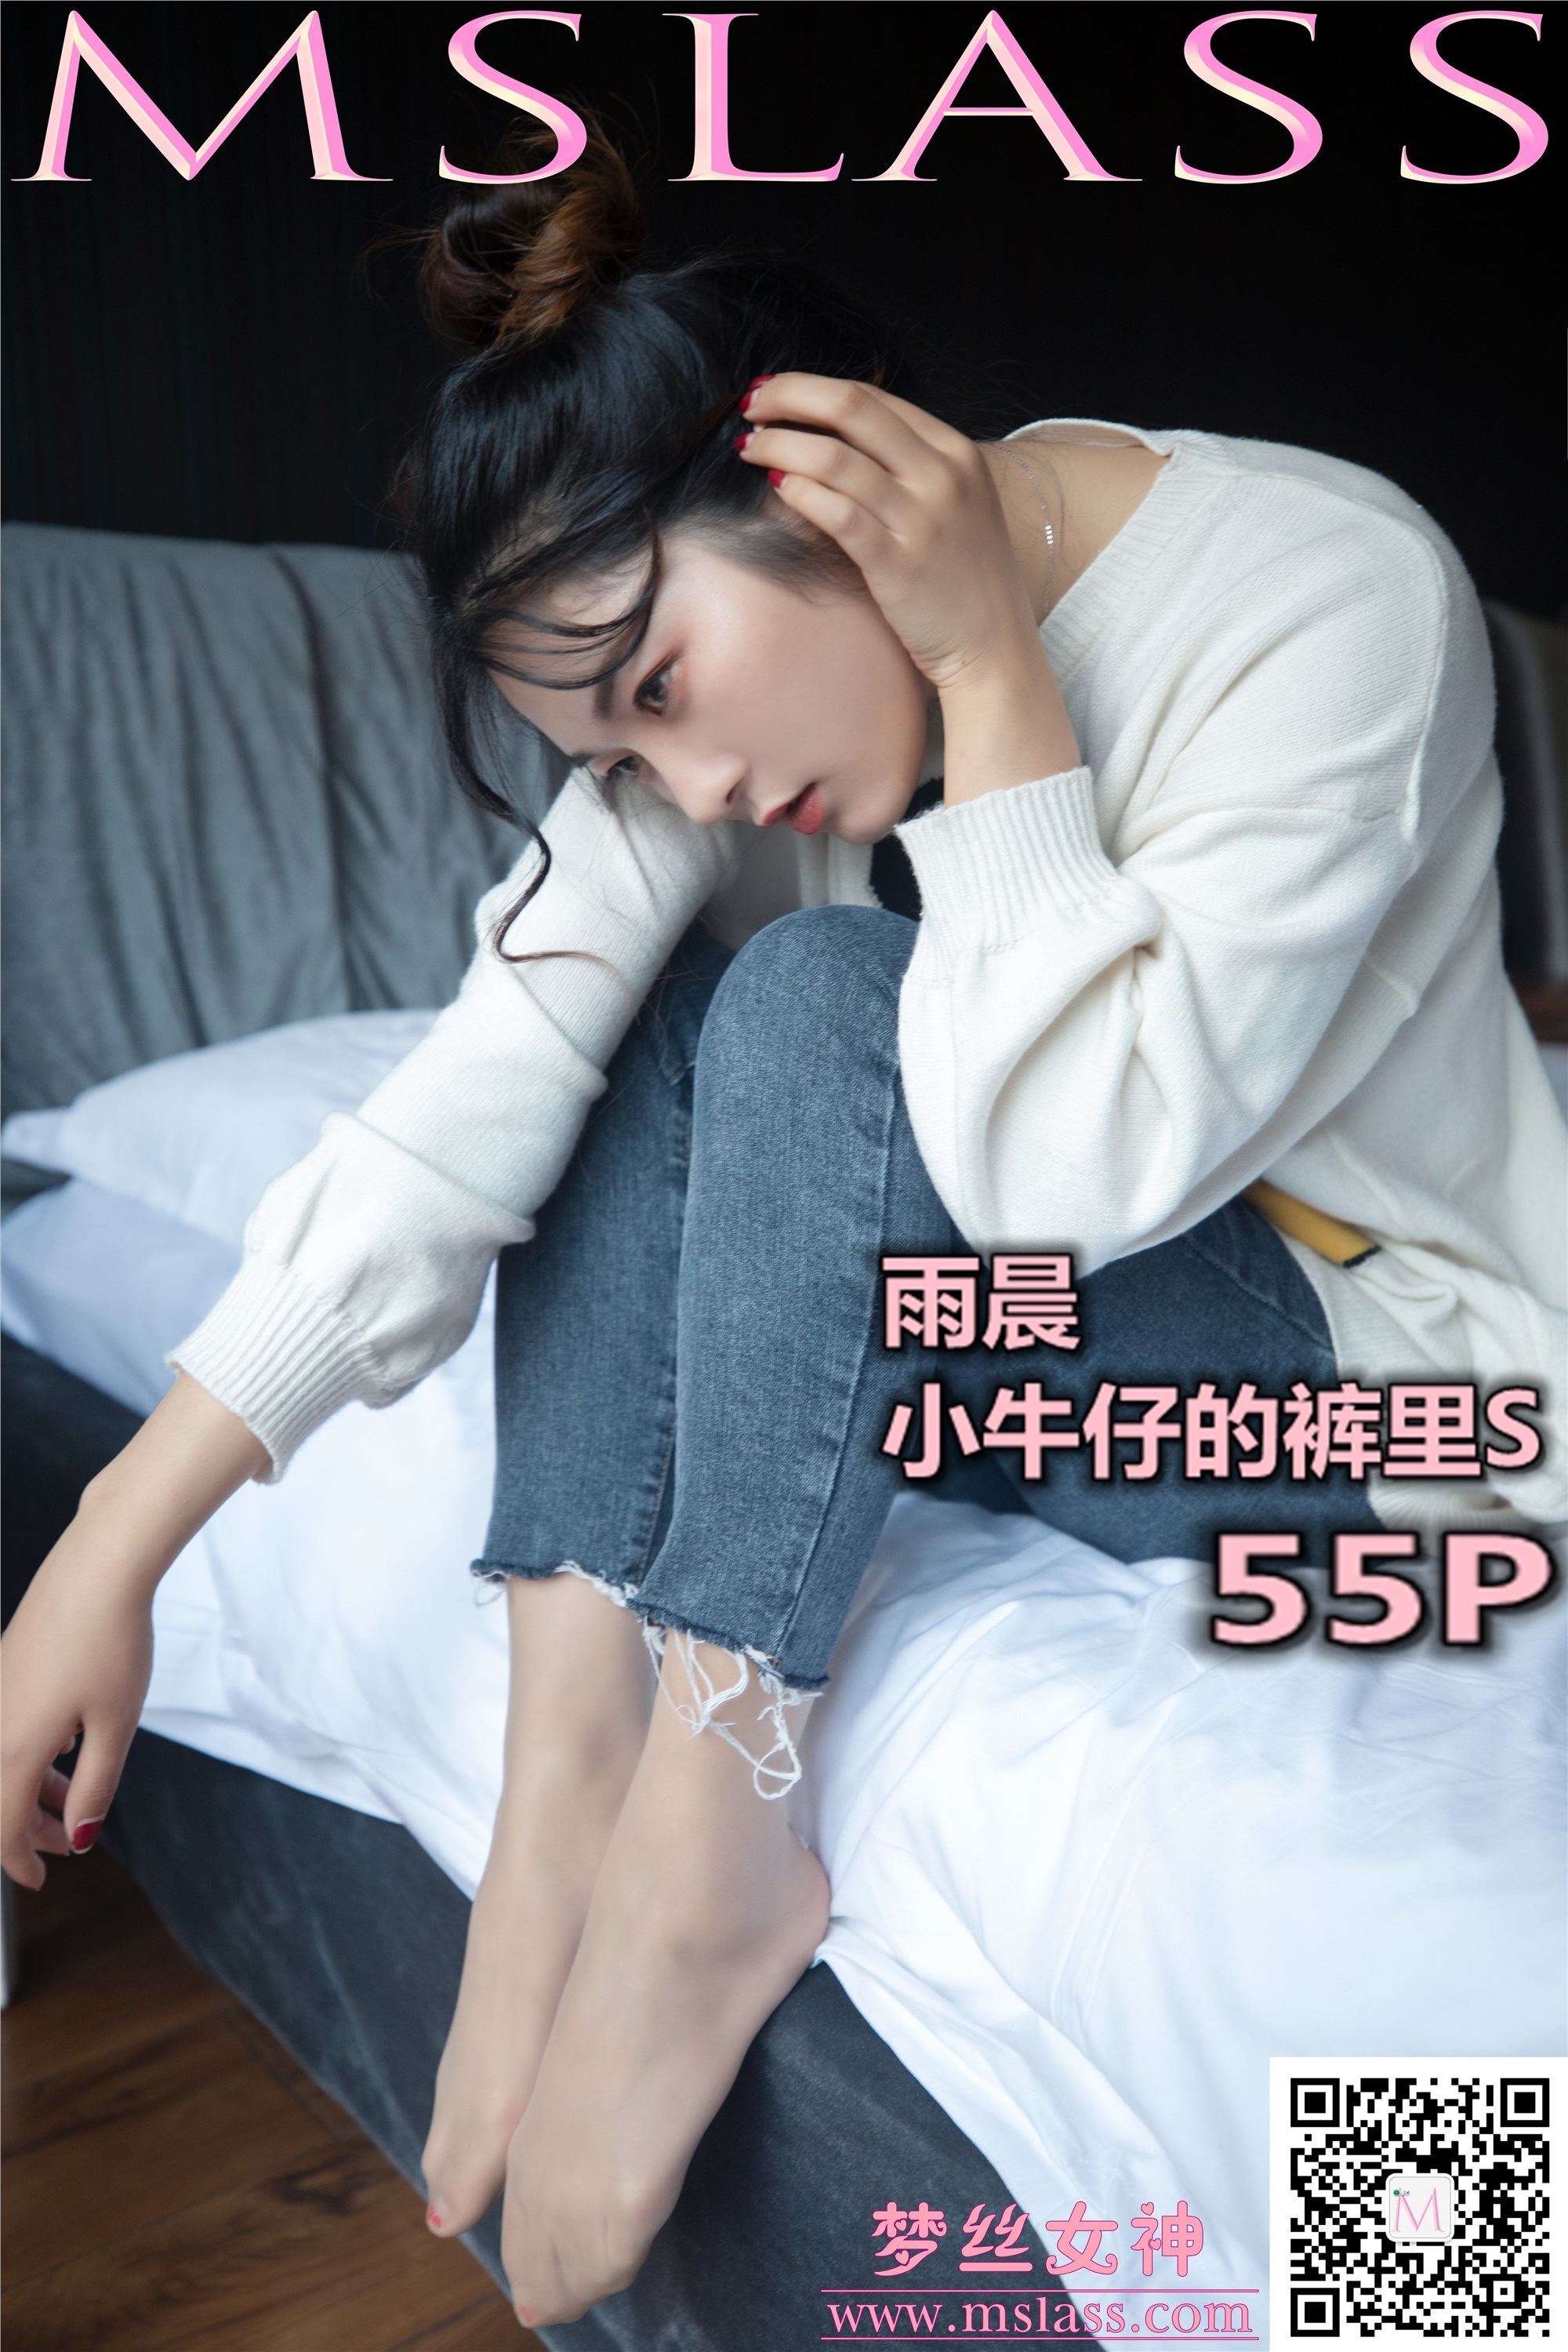 MSLASS梦丝女神 2019-11-11 Vol.067 雨晨 牛仔裤的裤里丝